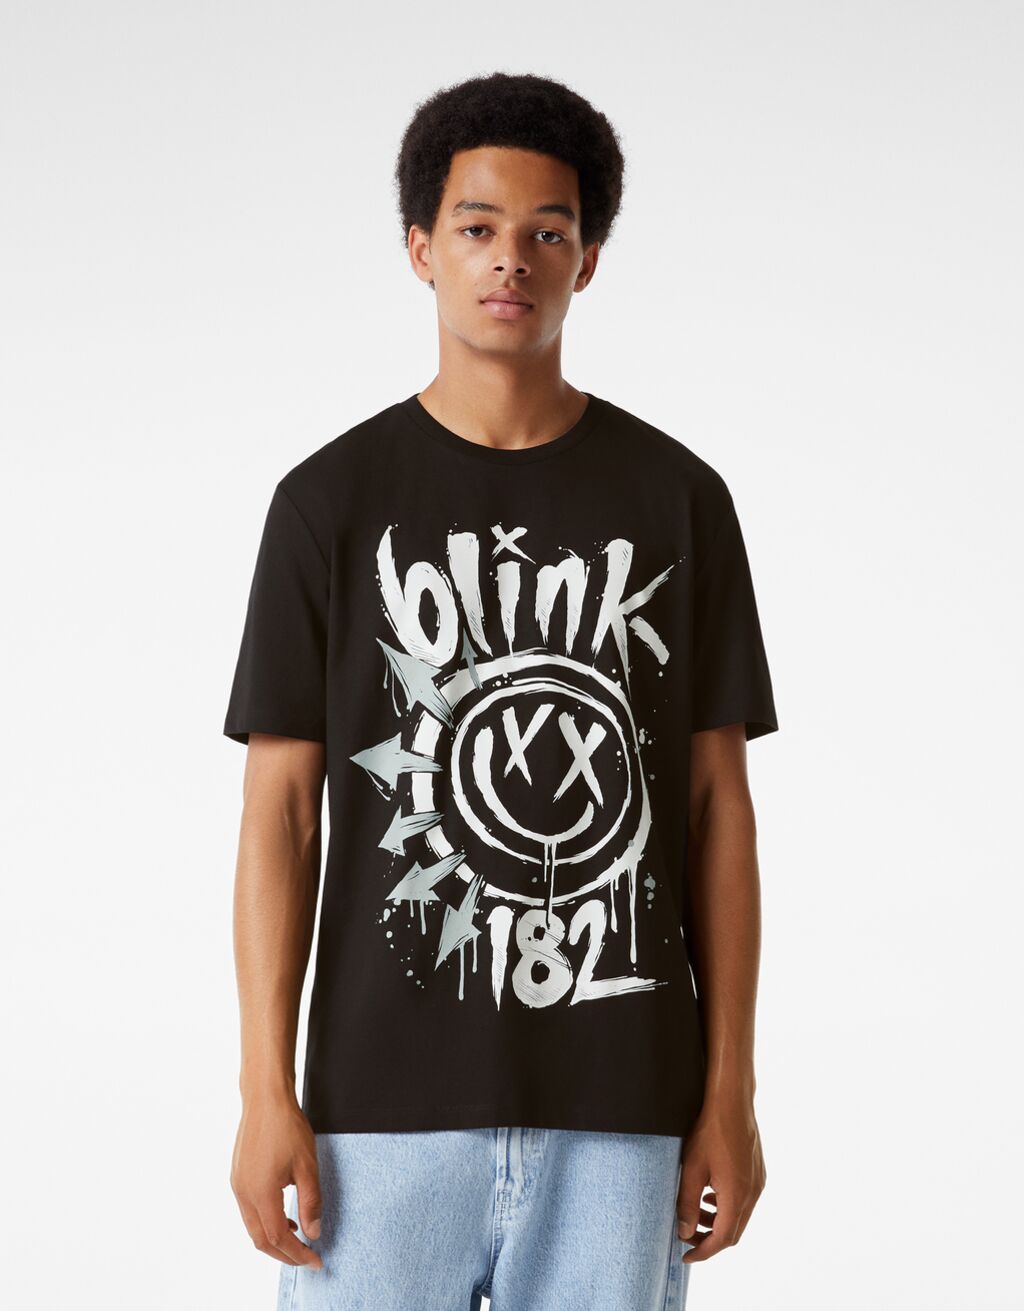 T-shirt manches courtes regular fit imprimé Blink 182